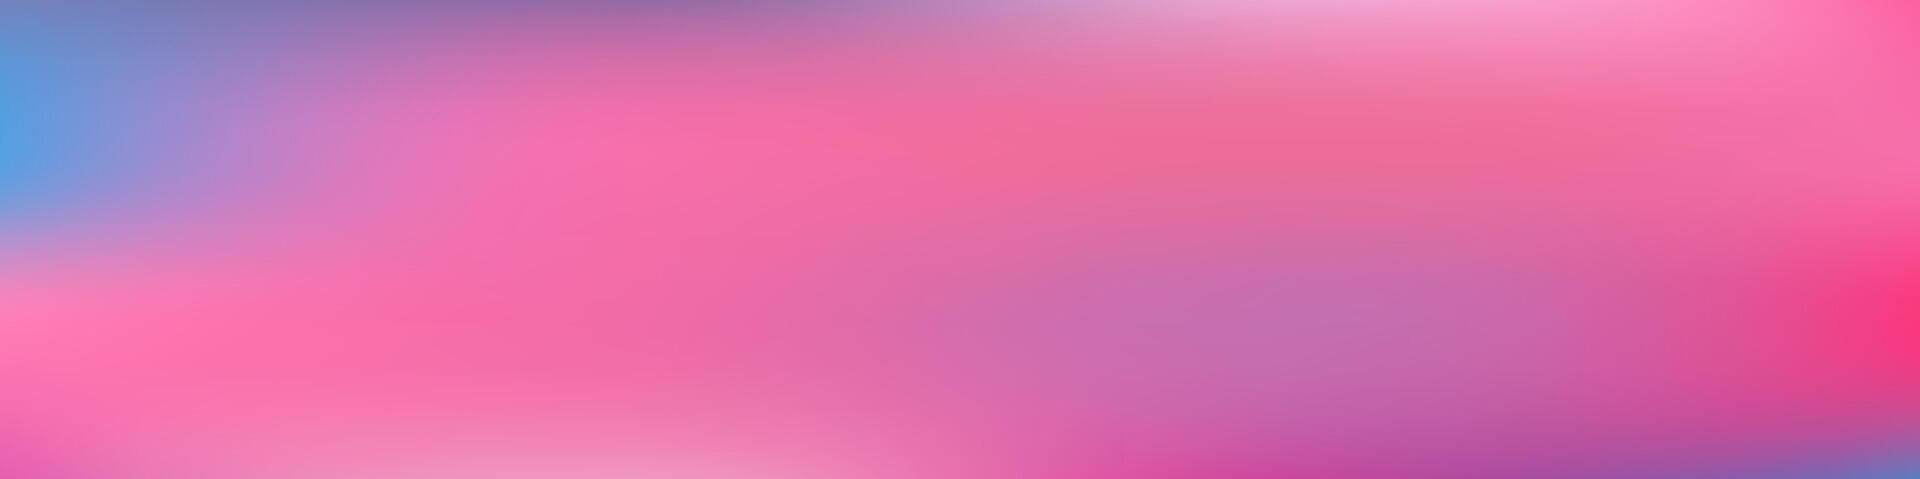 abstrato malha borrão bandeira. moderno Rosa e azul malha onda borrão Projeto. ideal para promoções, social meios de comunicação, brochuras, apresentações vetor